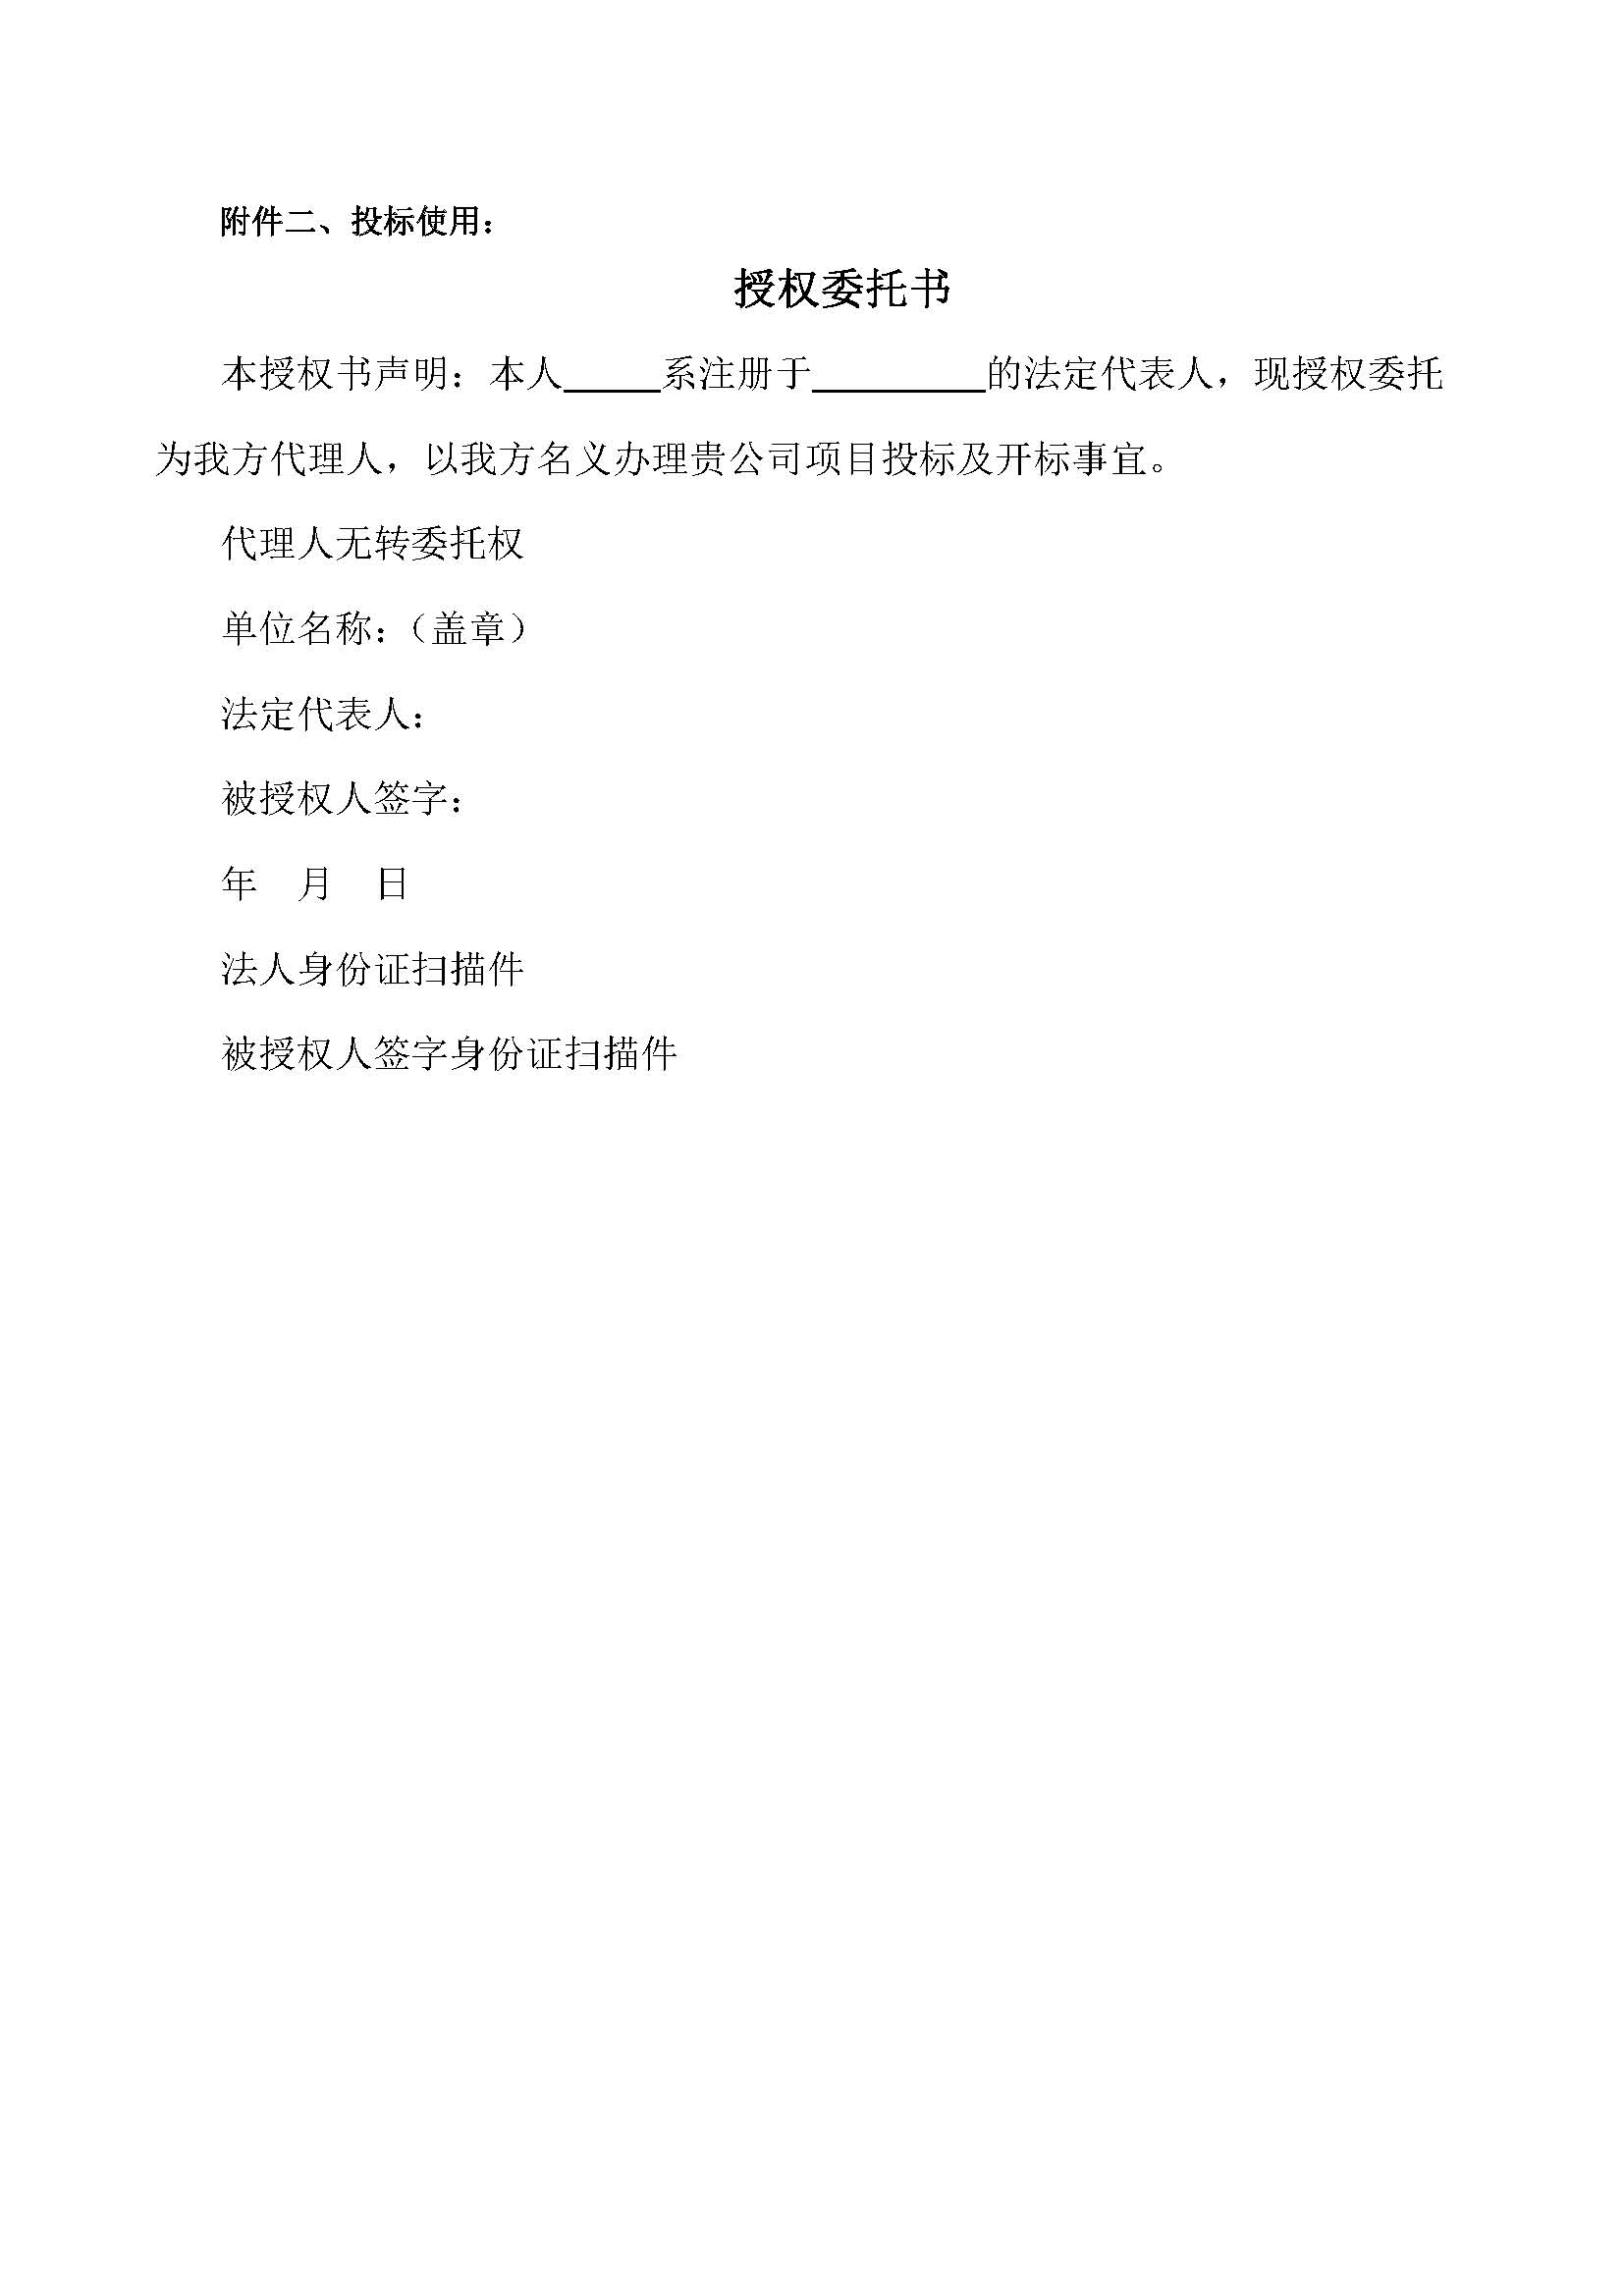 【招标公告】广州轨道交通十一号线工程项目_页面_5.jpg